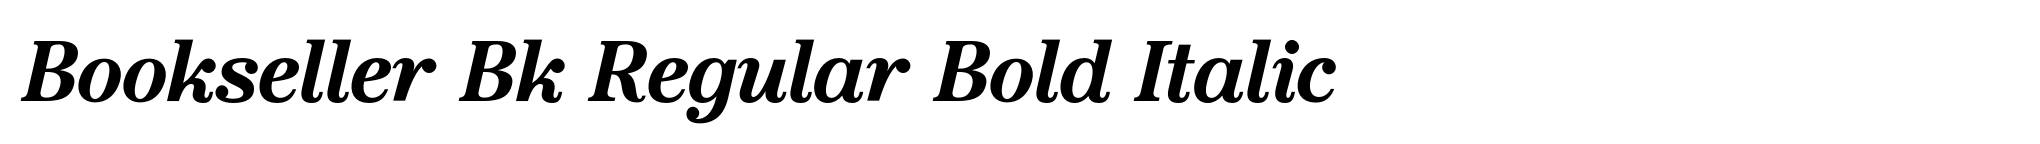 Bookseller Bk Regular Bold Italic image